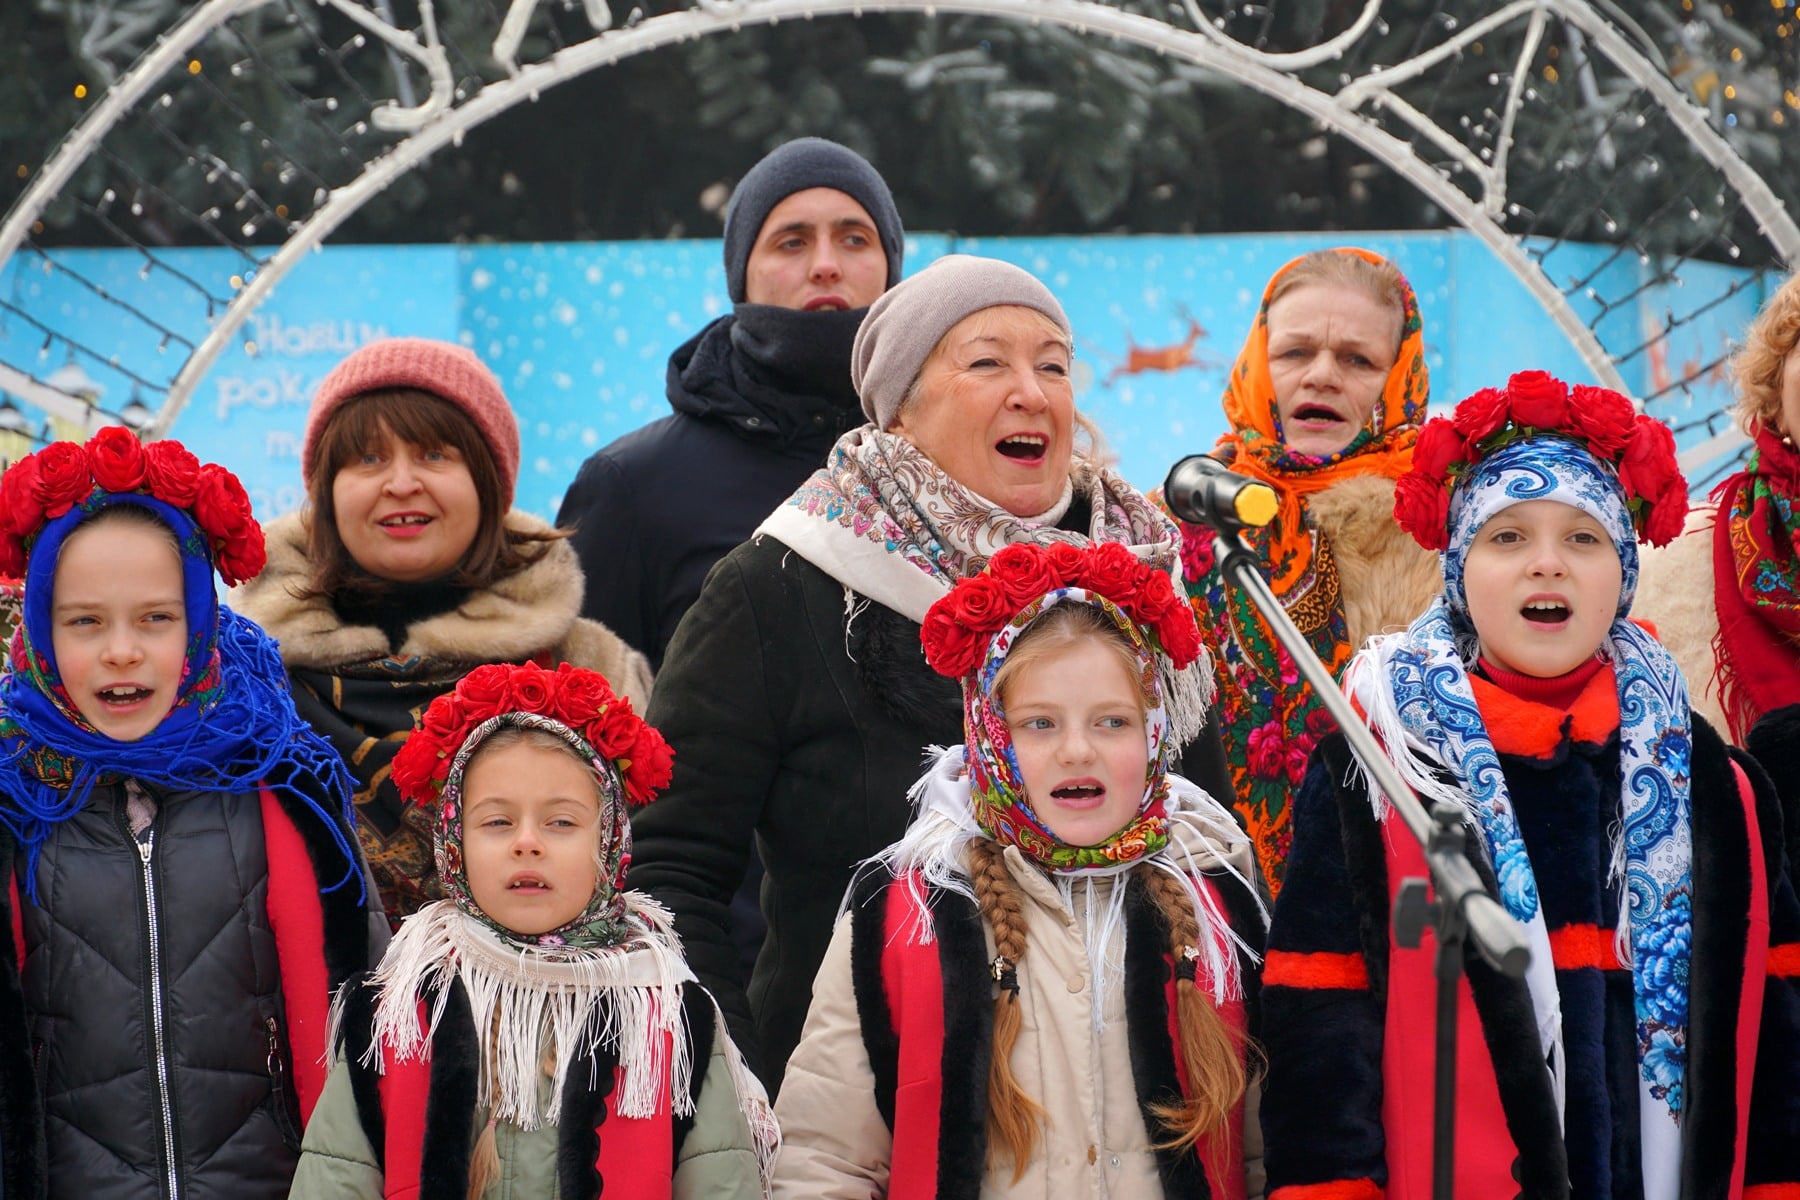 Ужгород долучився до всеукраїнської акції "Нова радість стала" (ФОТО)